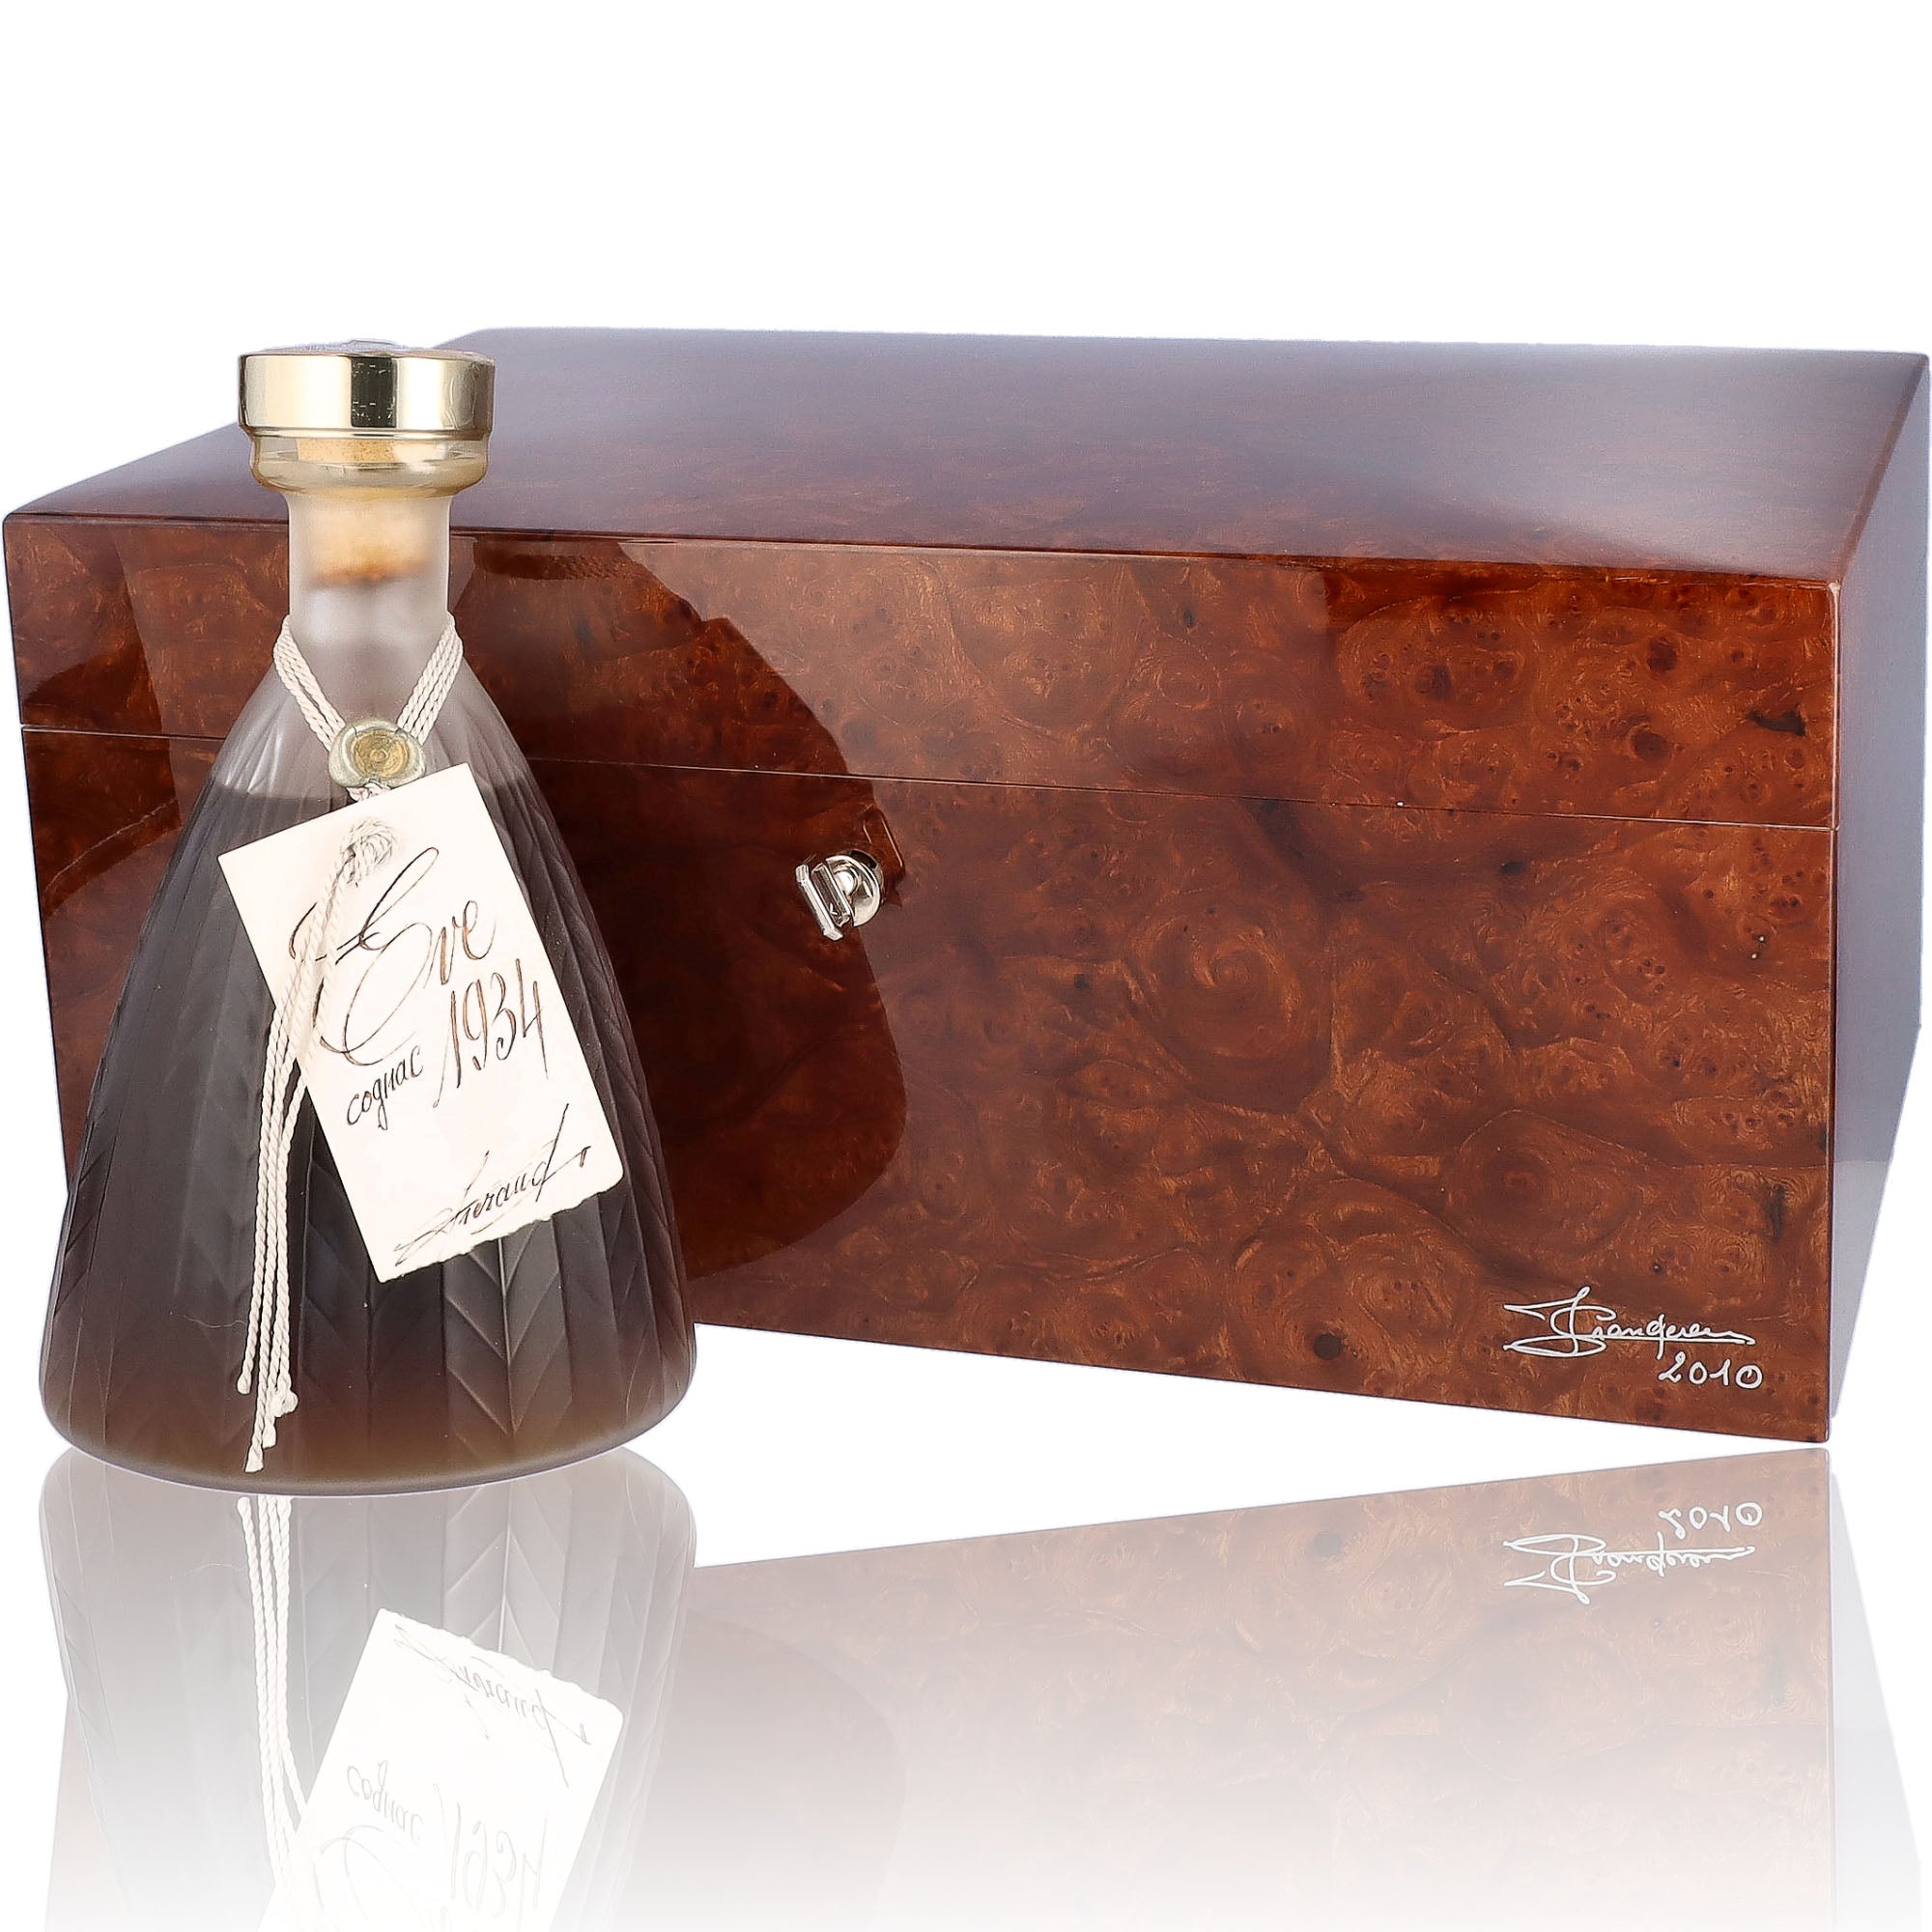 Une bouteille de Cognac, de la marque Lheraud, nommée Eve.